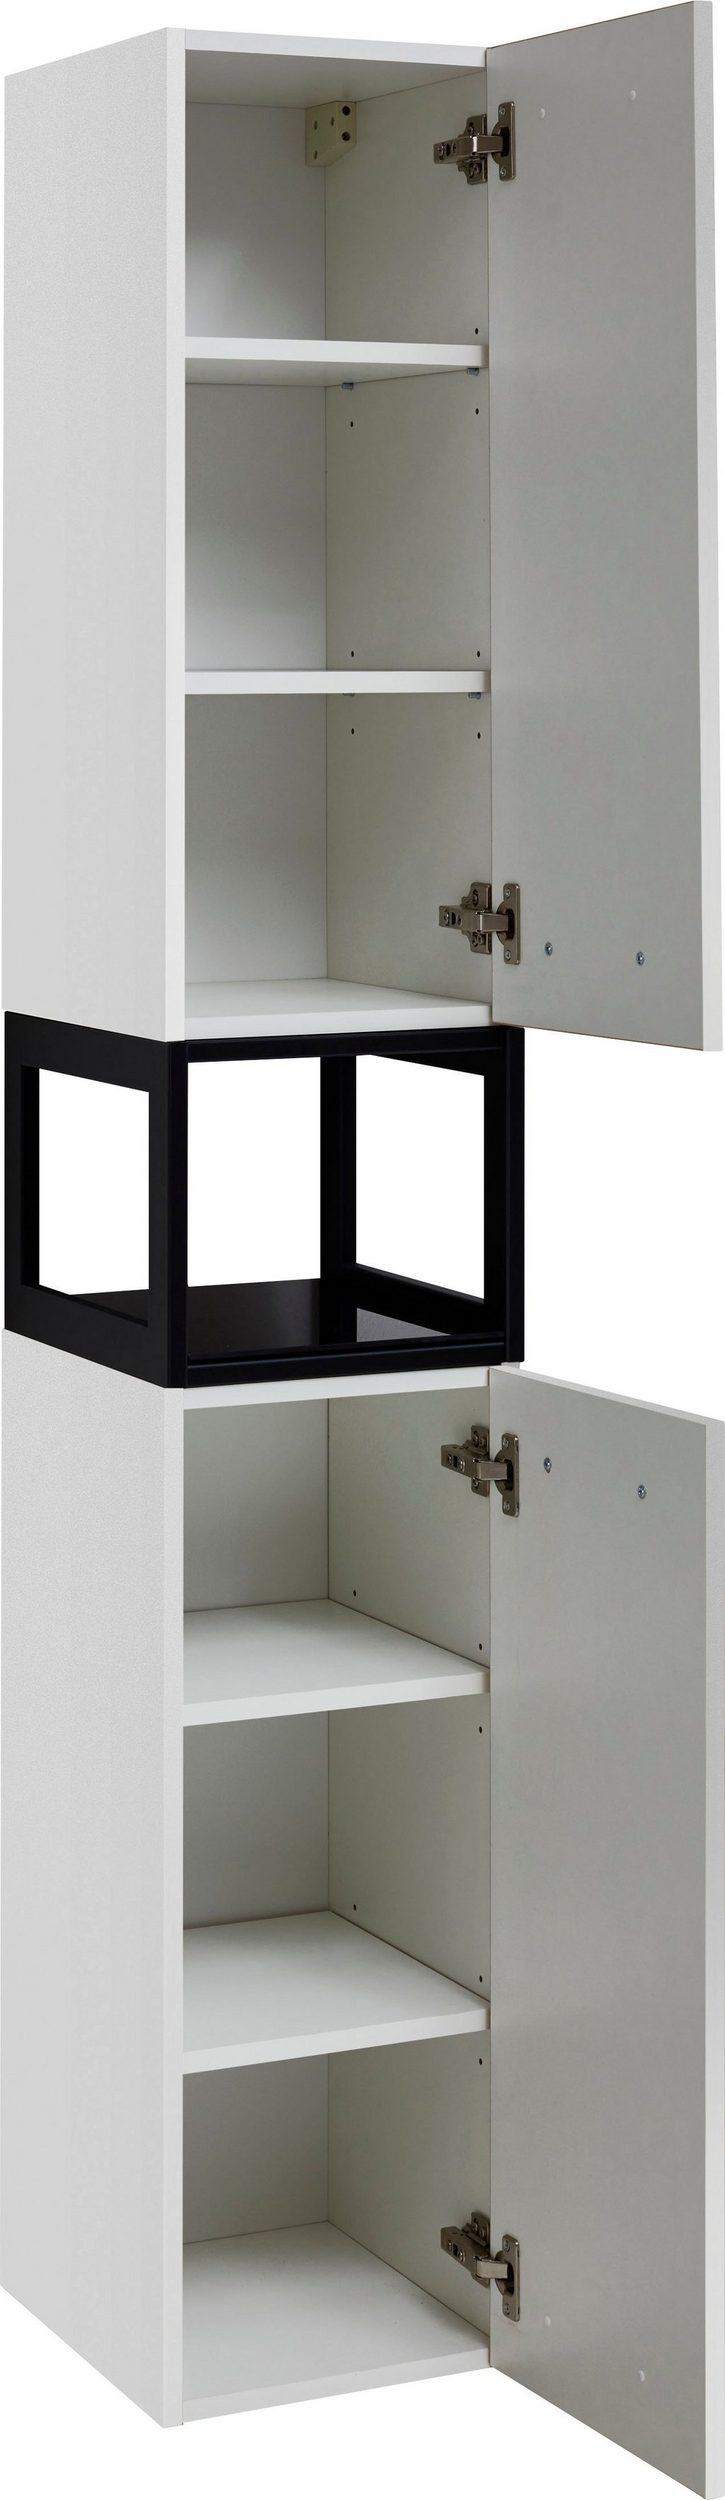 Young Concept Basic fürdőszoba bútor HTGT30+ magas szekrény